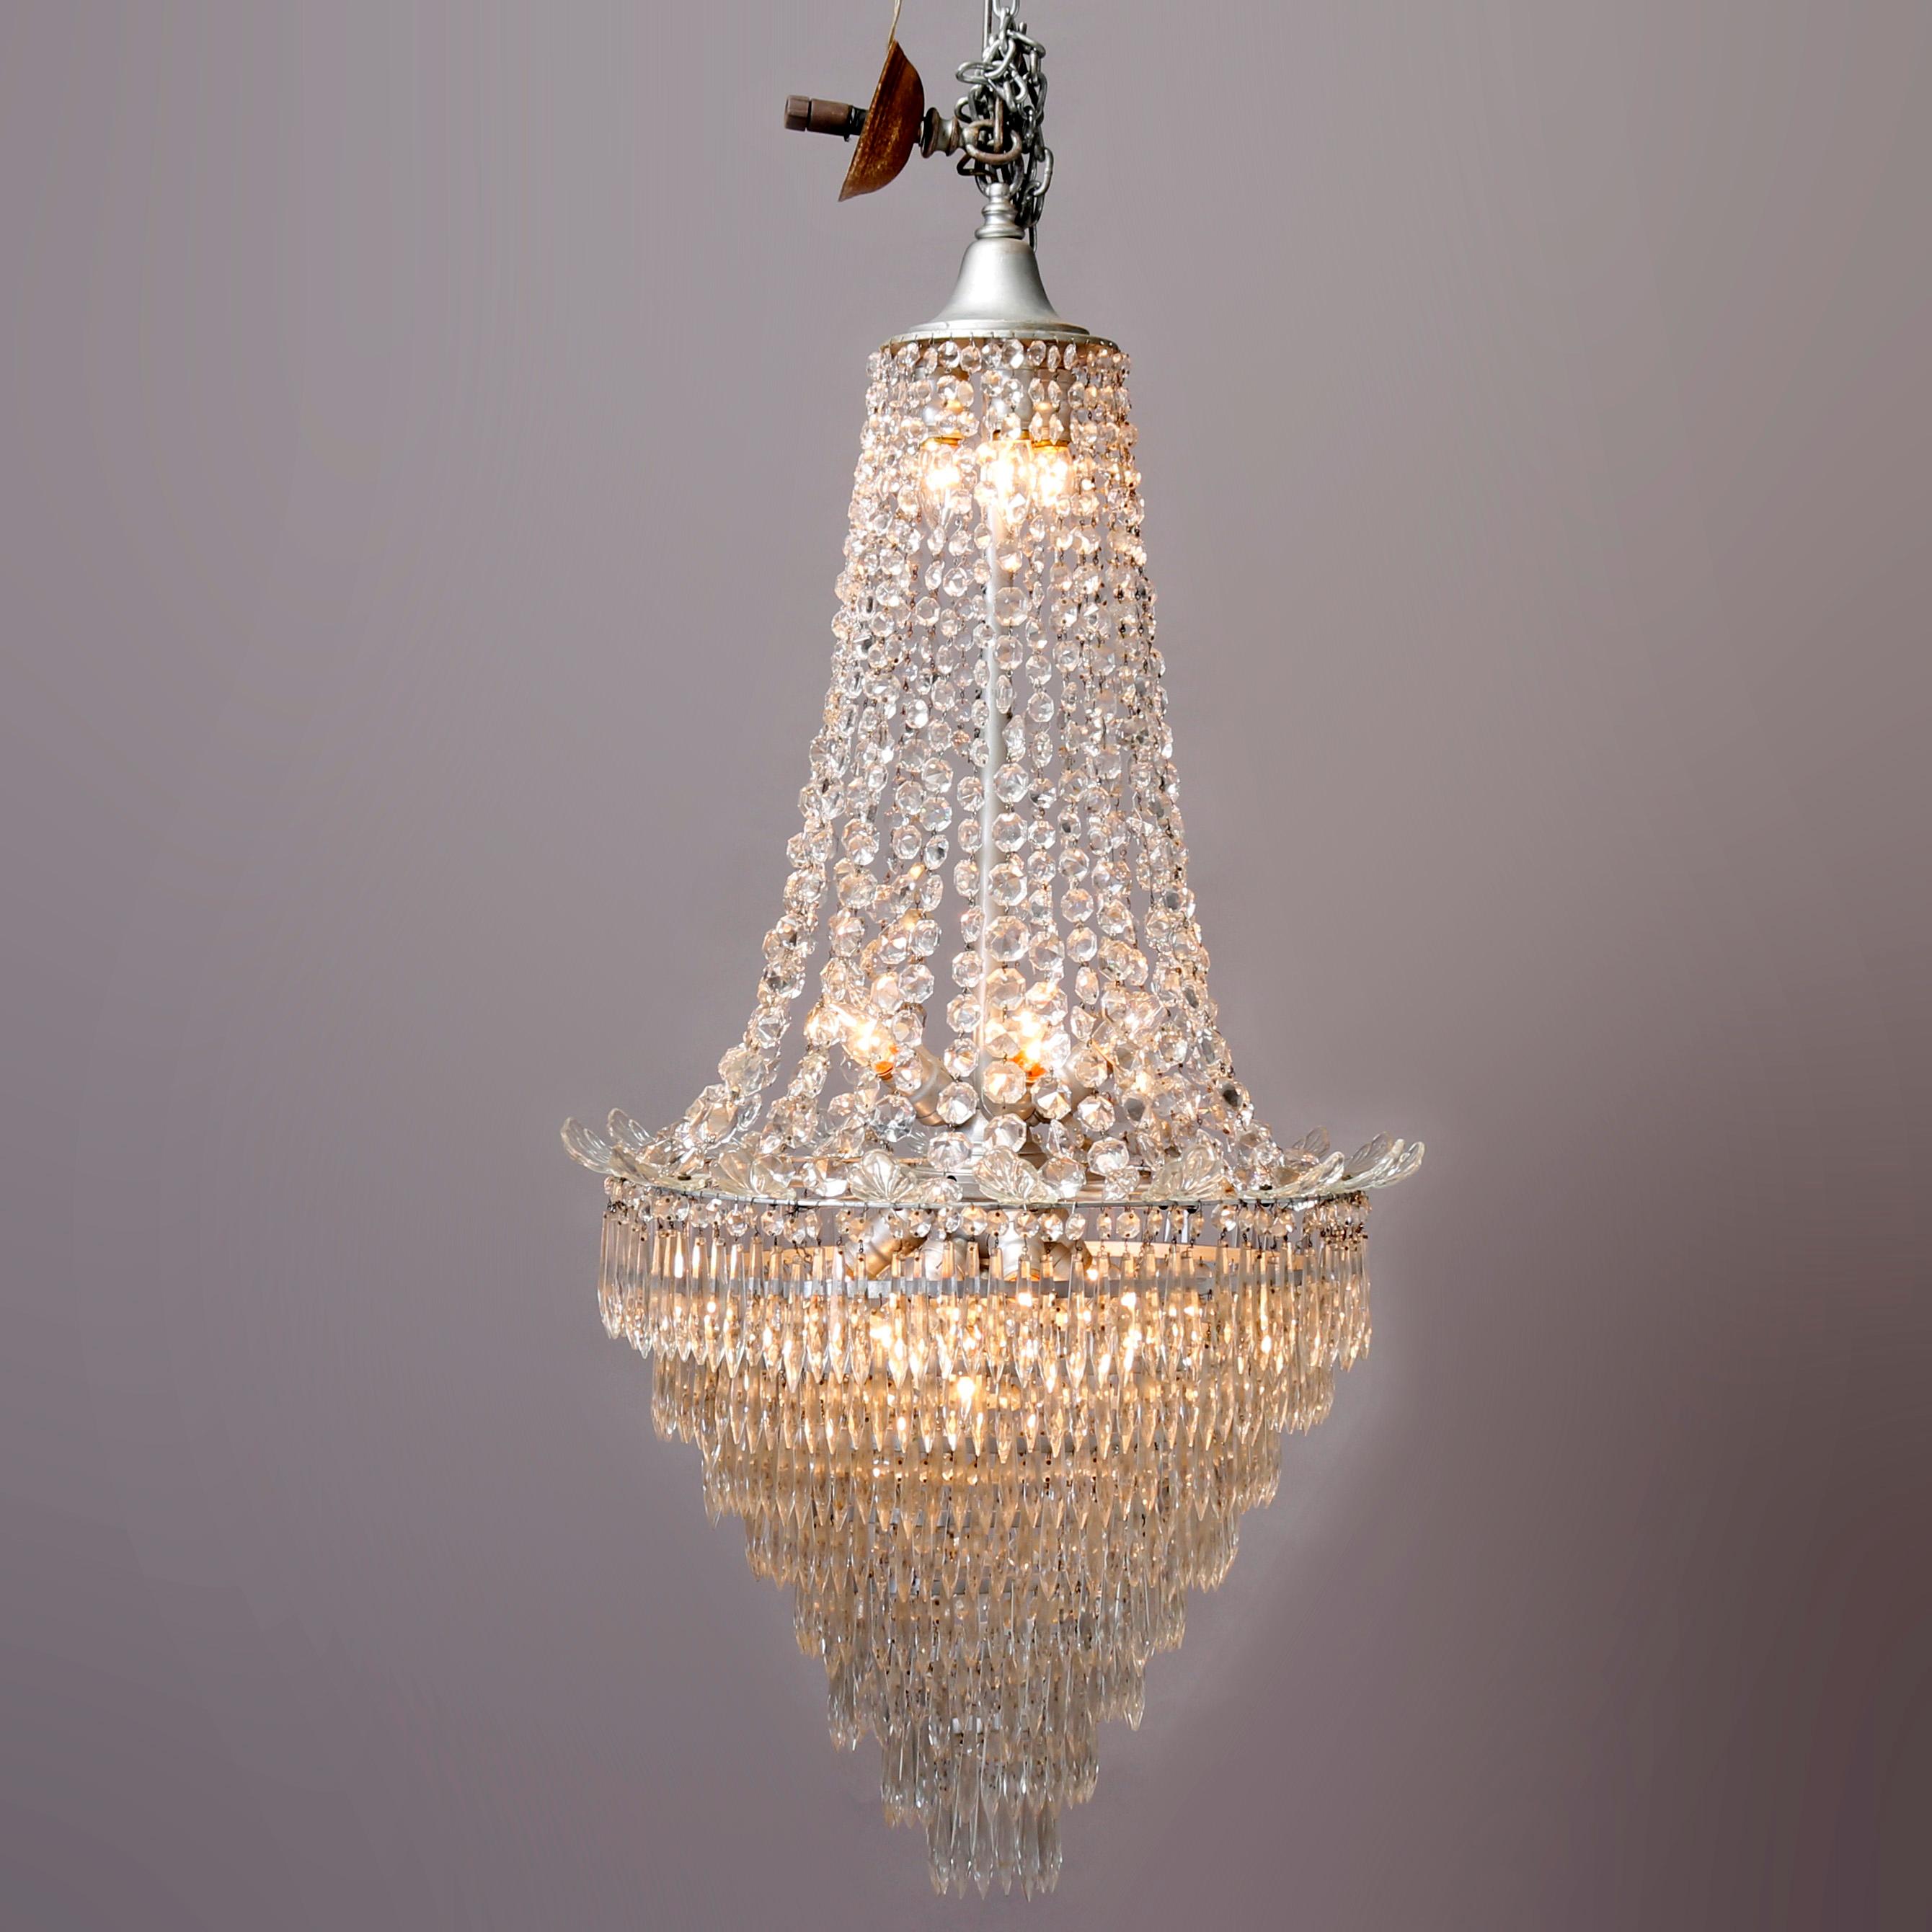 Ein Vintage-Kronleuchter Französisch bietet abgestufte Hochzeitstorte Form mit fünfzehn Lichter mit drapierten aufgereiht und Tropfen geschliffenen Kristallen im gesamten, 20.

Maße: 53